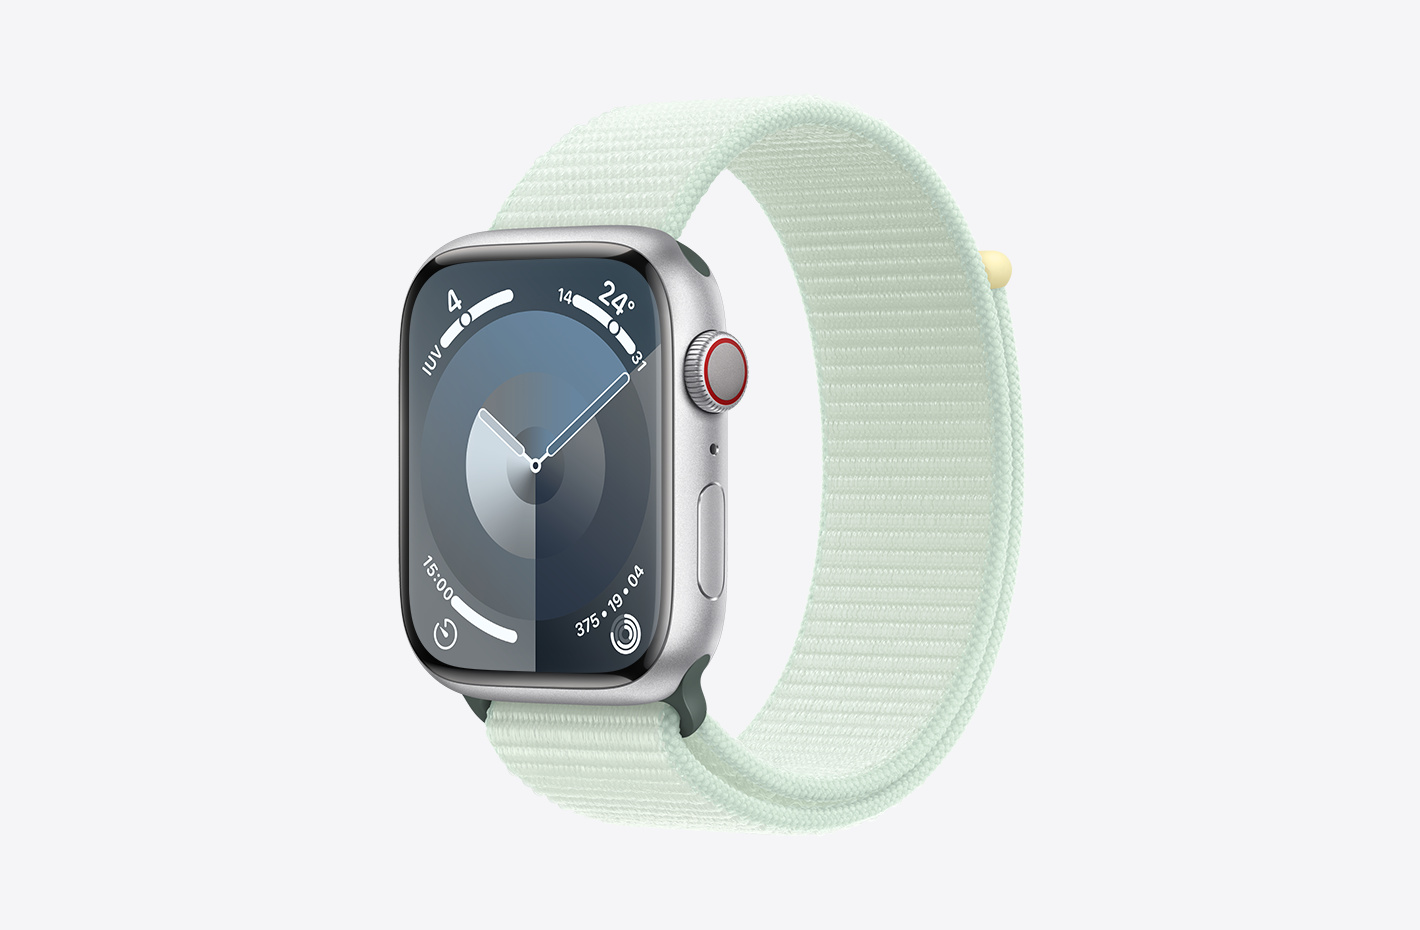 Apple Watch con caja de aluminio en plata con acabado mate y vista en diagonal de la correa Loop deportiva color menta suave (verde), con cierre adhesivo y tejido de nailon de doble capa